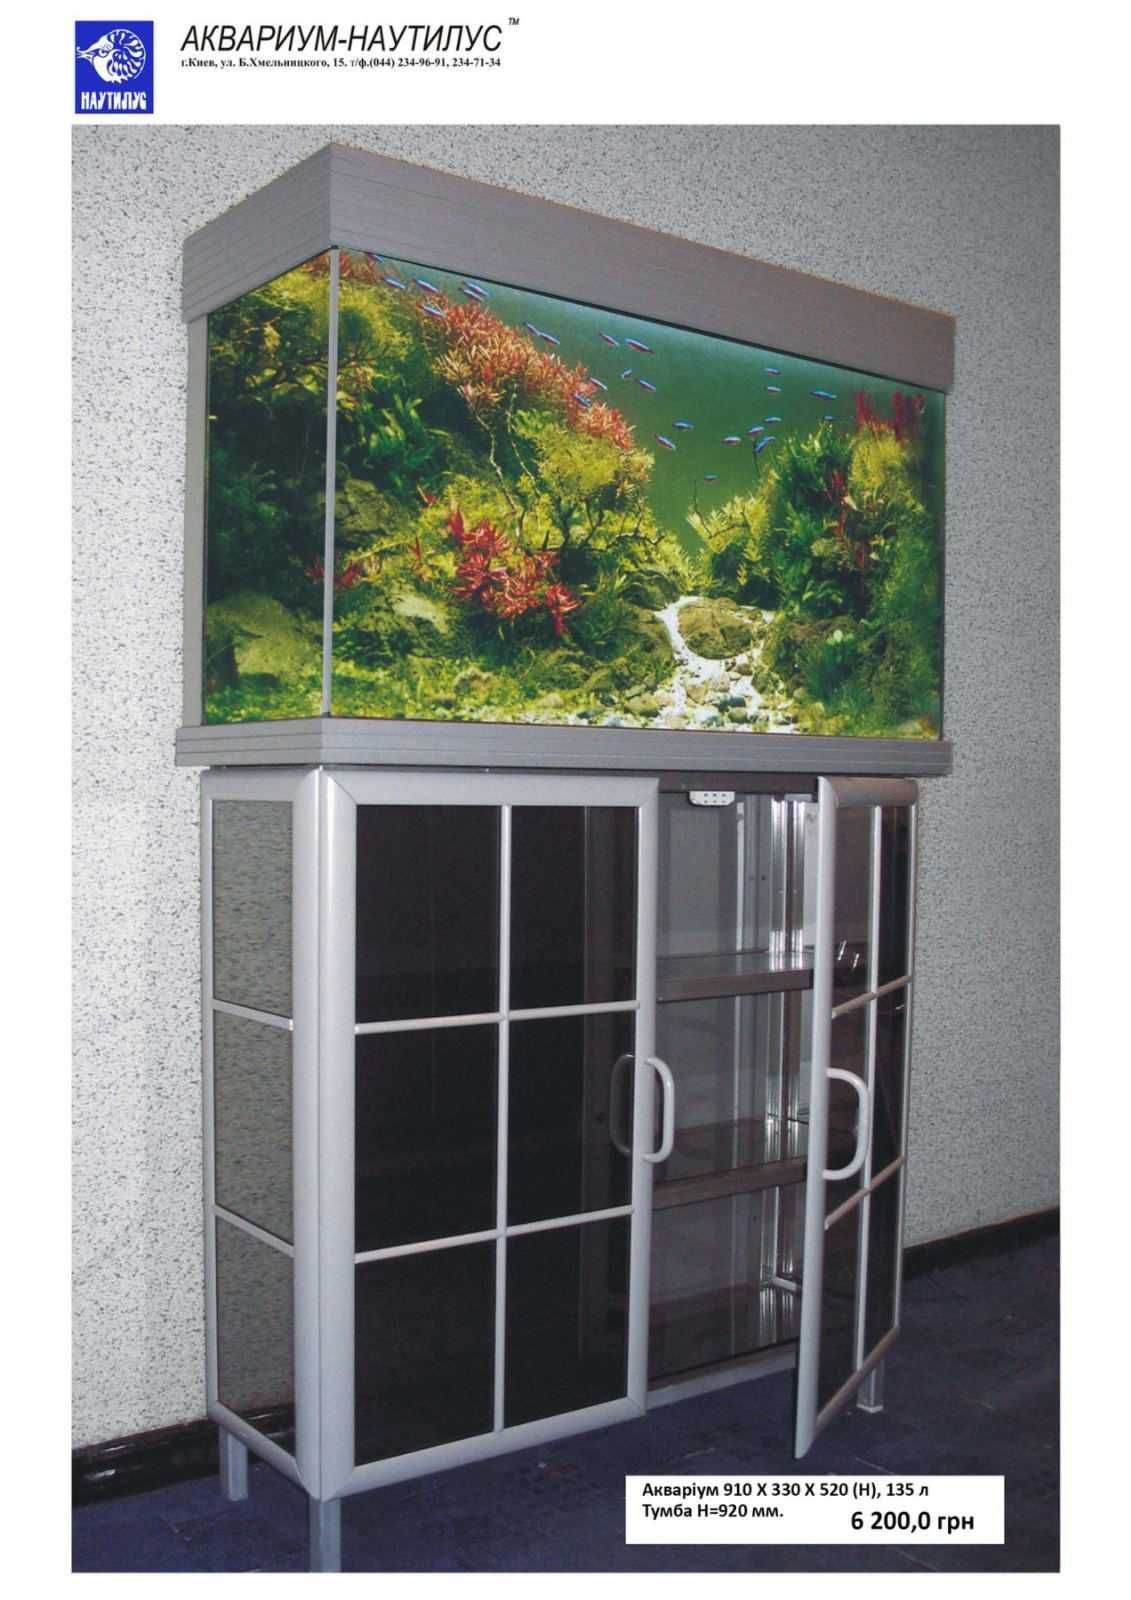 Продам аквариум с крышкой и тумбой на 135 литров